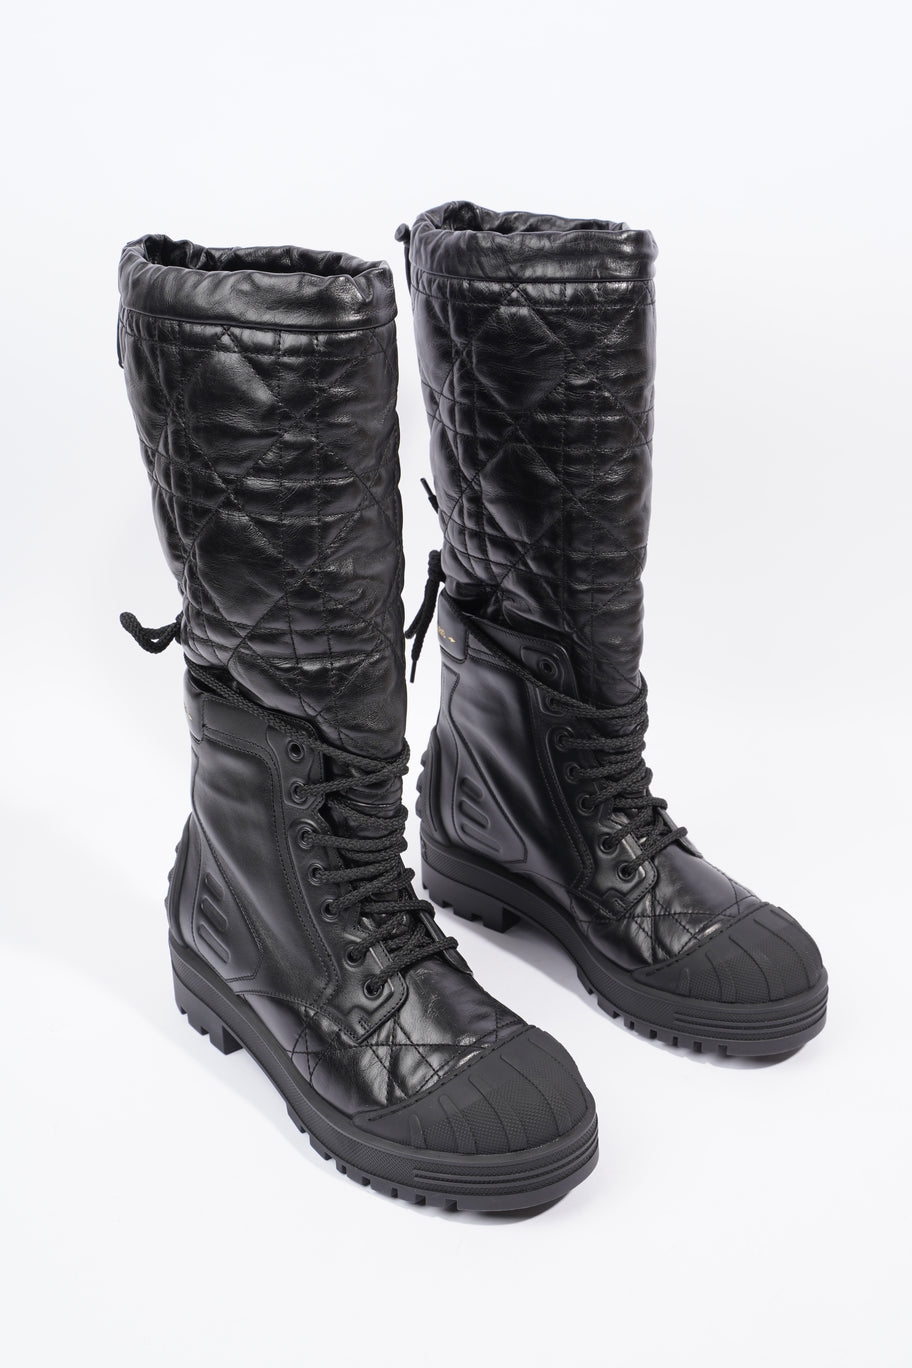 Boots Black Leather EU 39 UK 6 Image 2